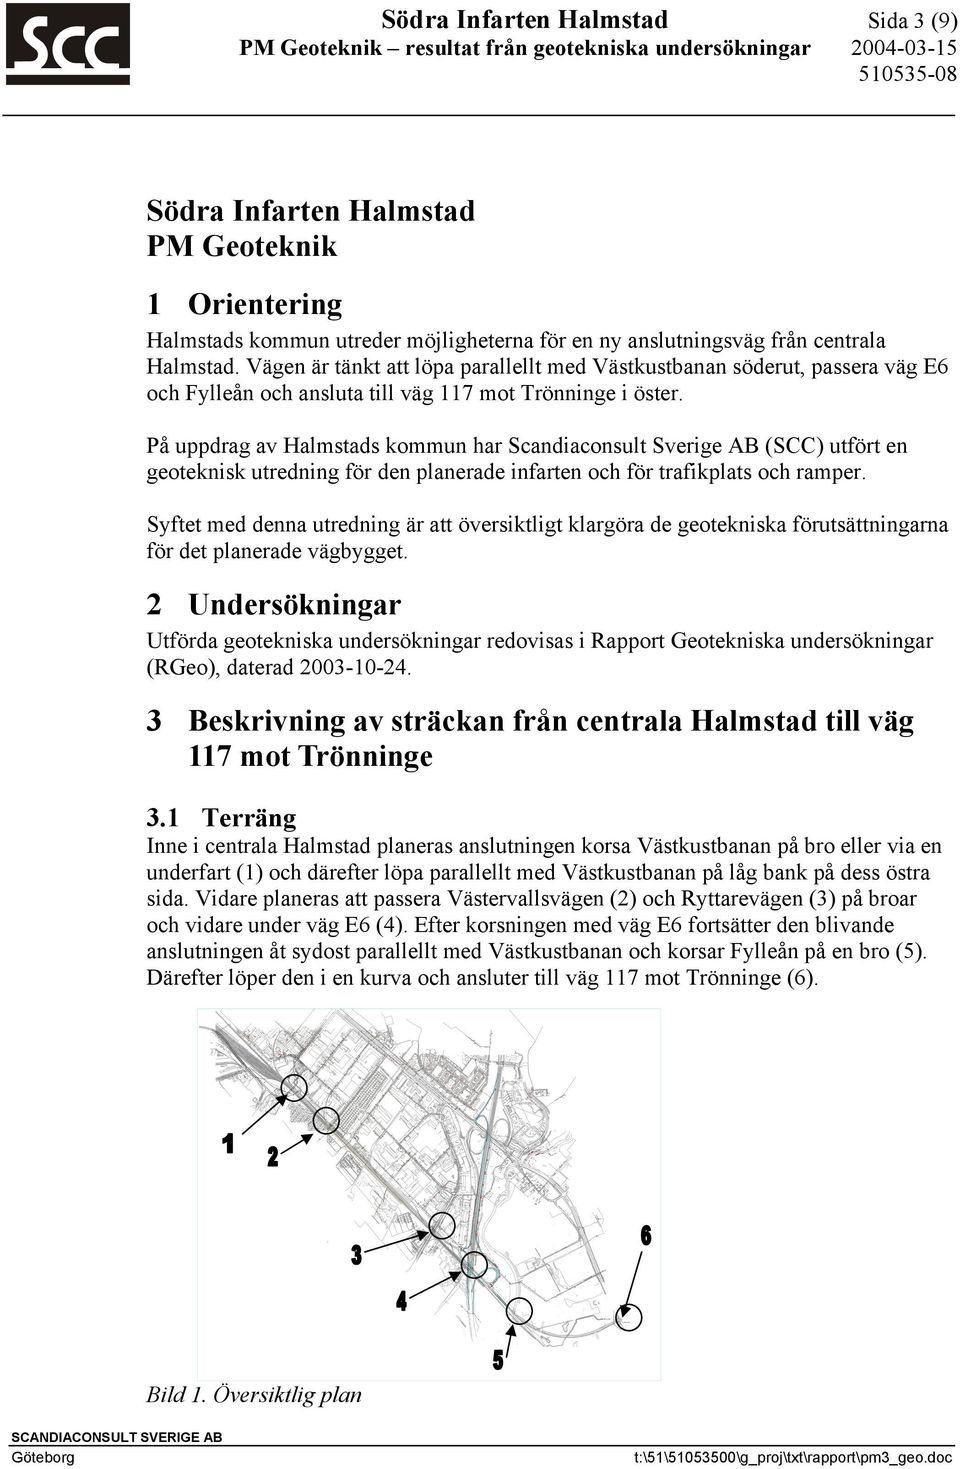 På uppdrag av Halmstads kommun har Scandiaconsult Sverige AB (SCC) utfört en geoteknisk utredning för den planerade infarten och för trafikplats och ramper.